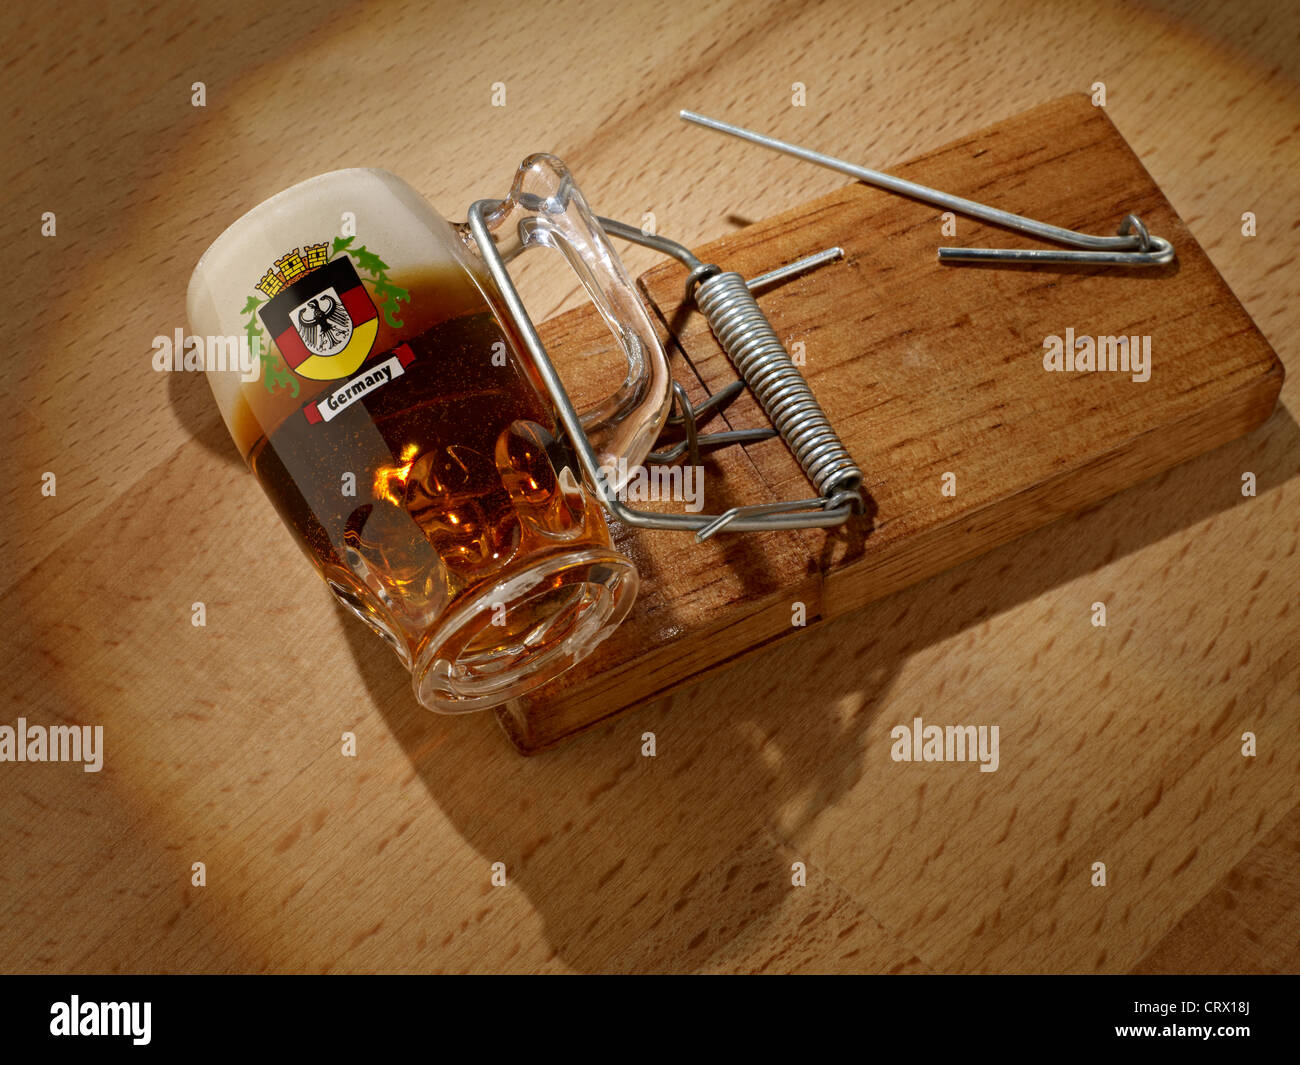 Vaso de cerveza alemana atrapada en una trampa de ratón Fotografía de stock  - Alamy